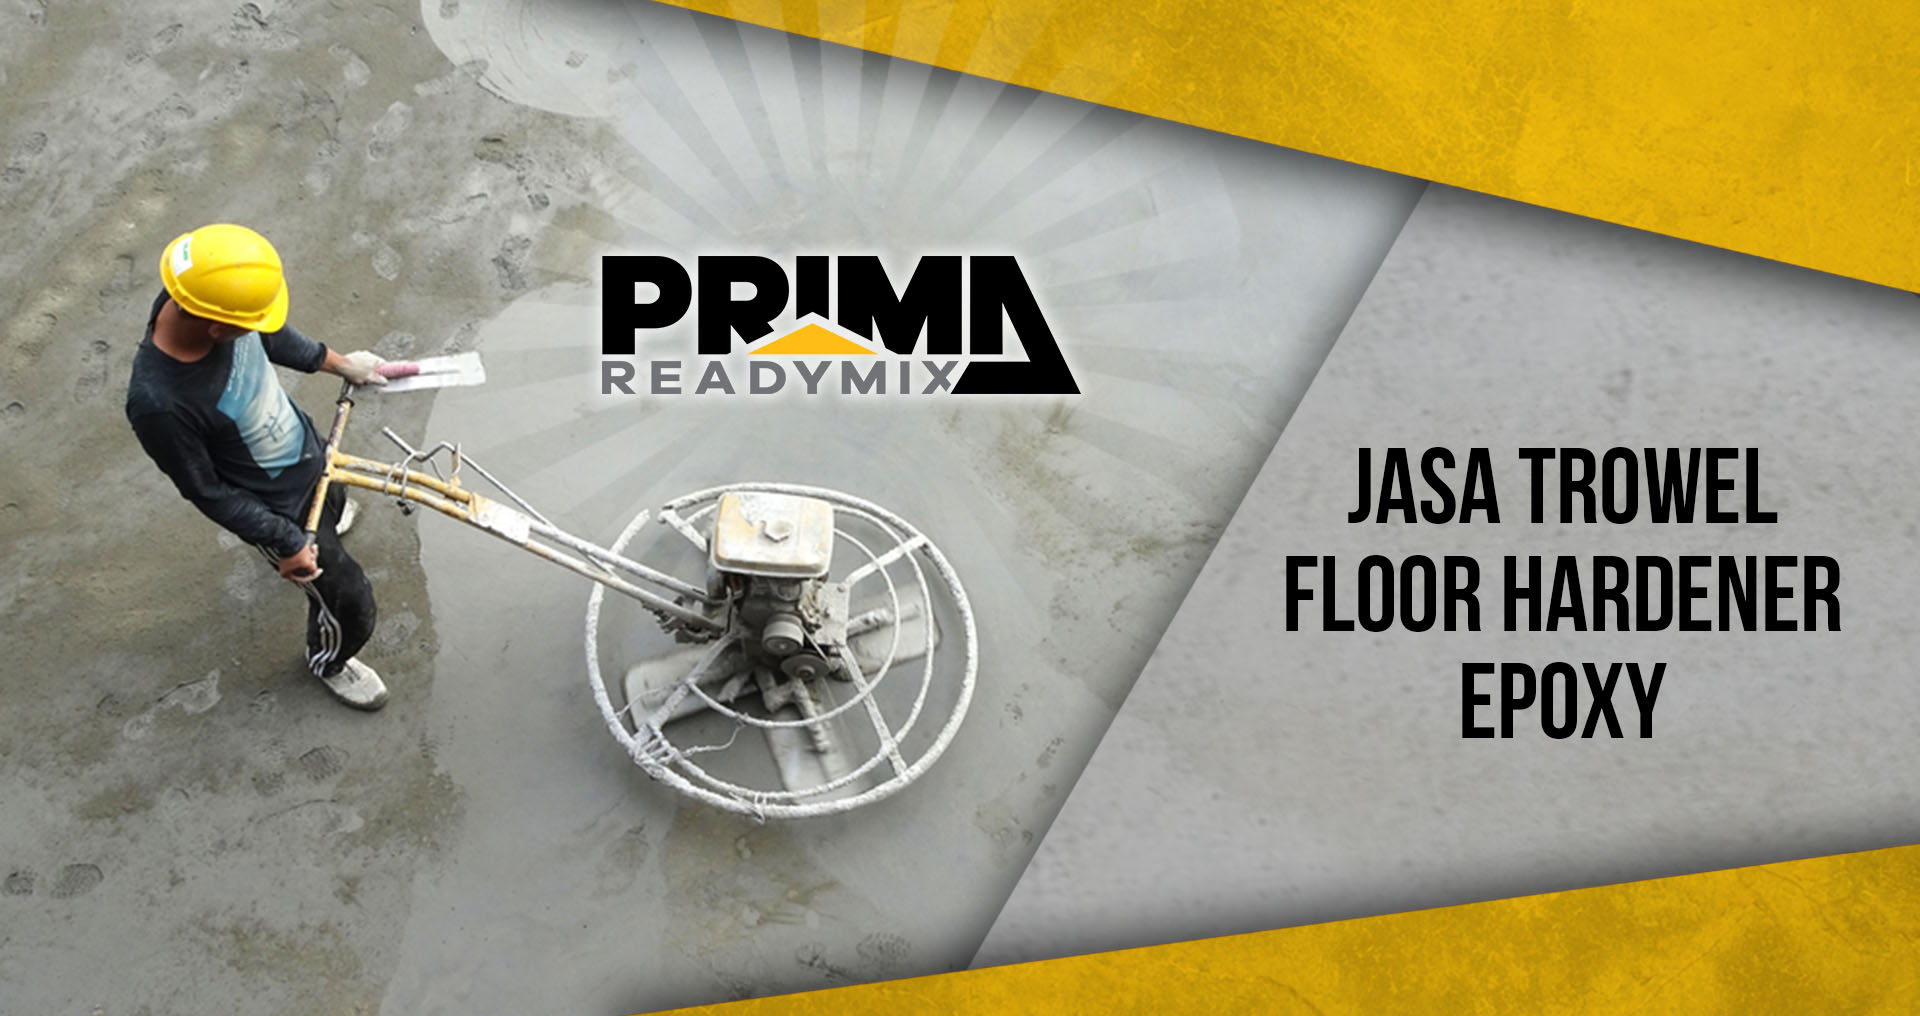 Jasa Trowel Floor Hardener